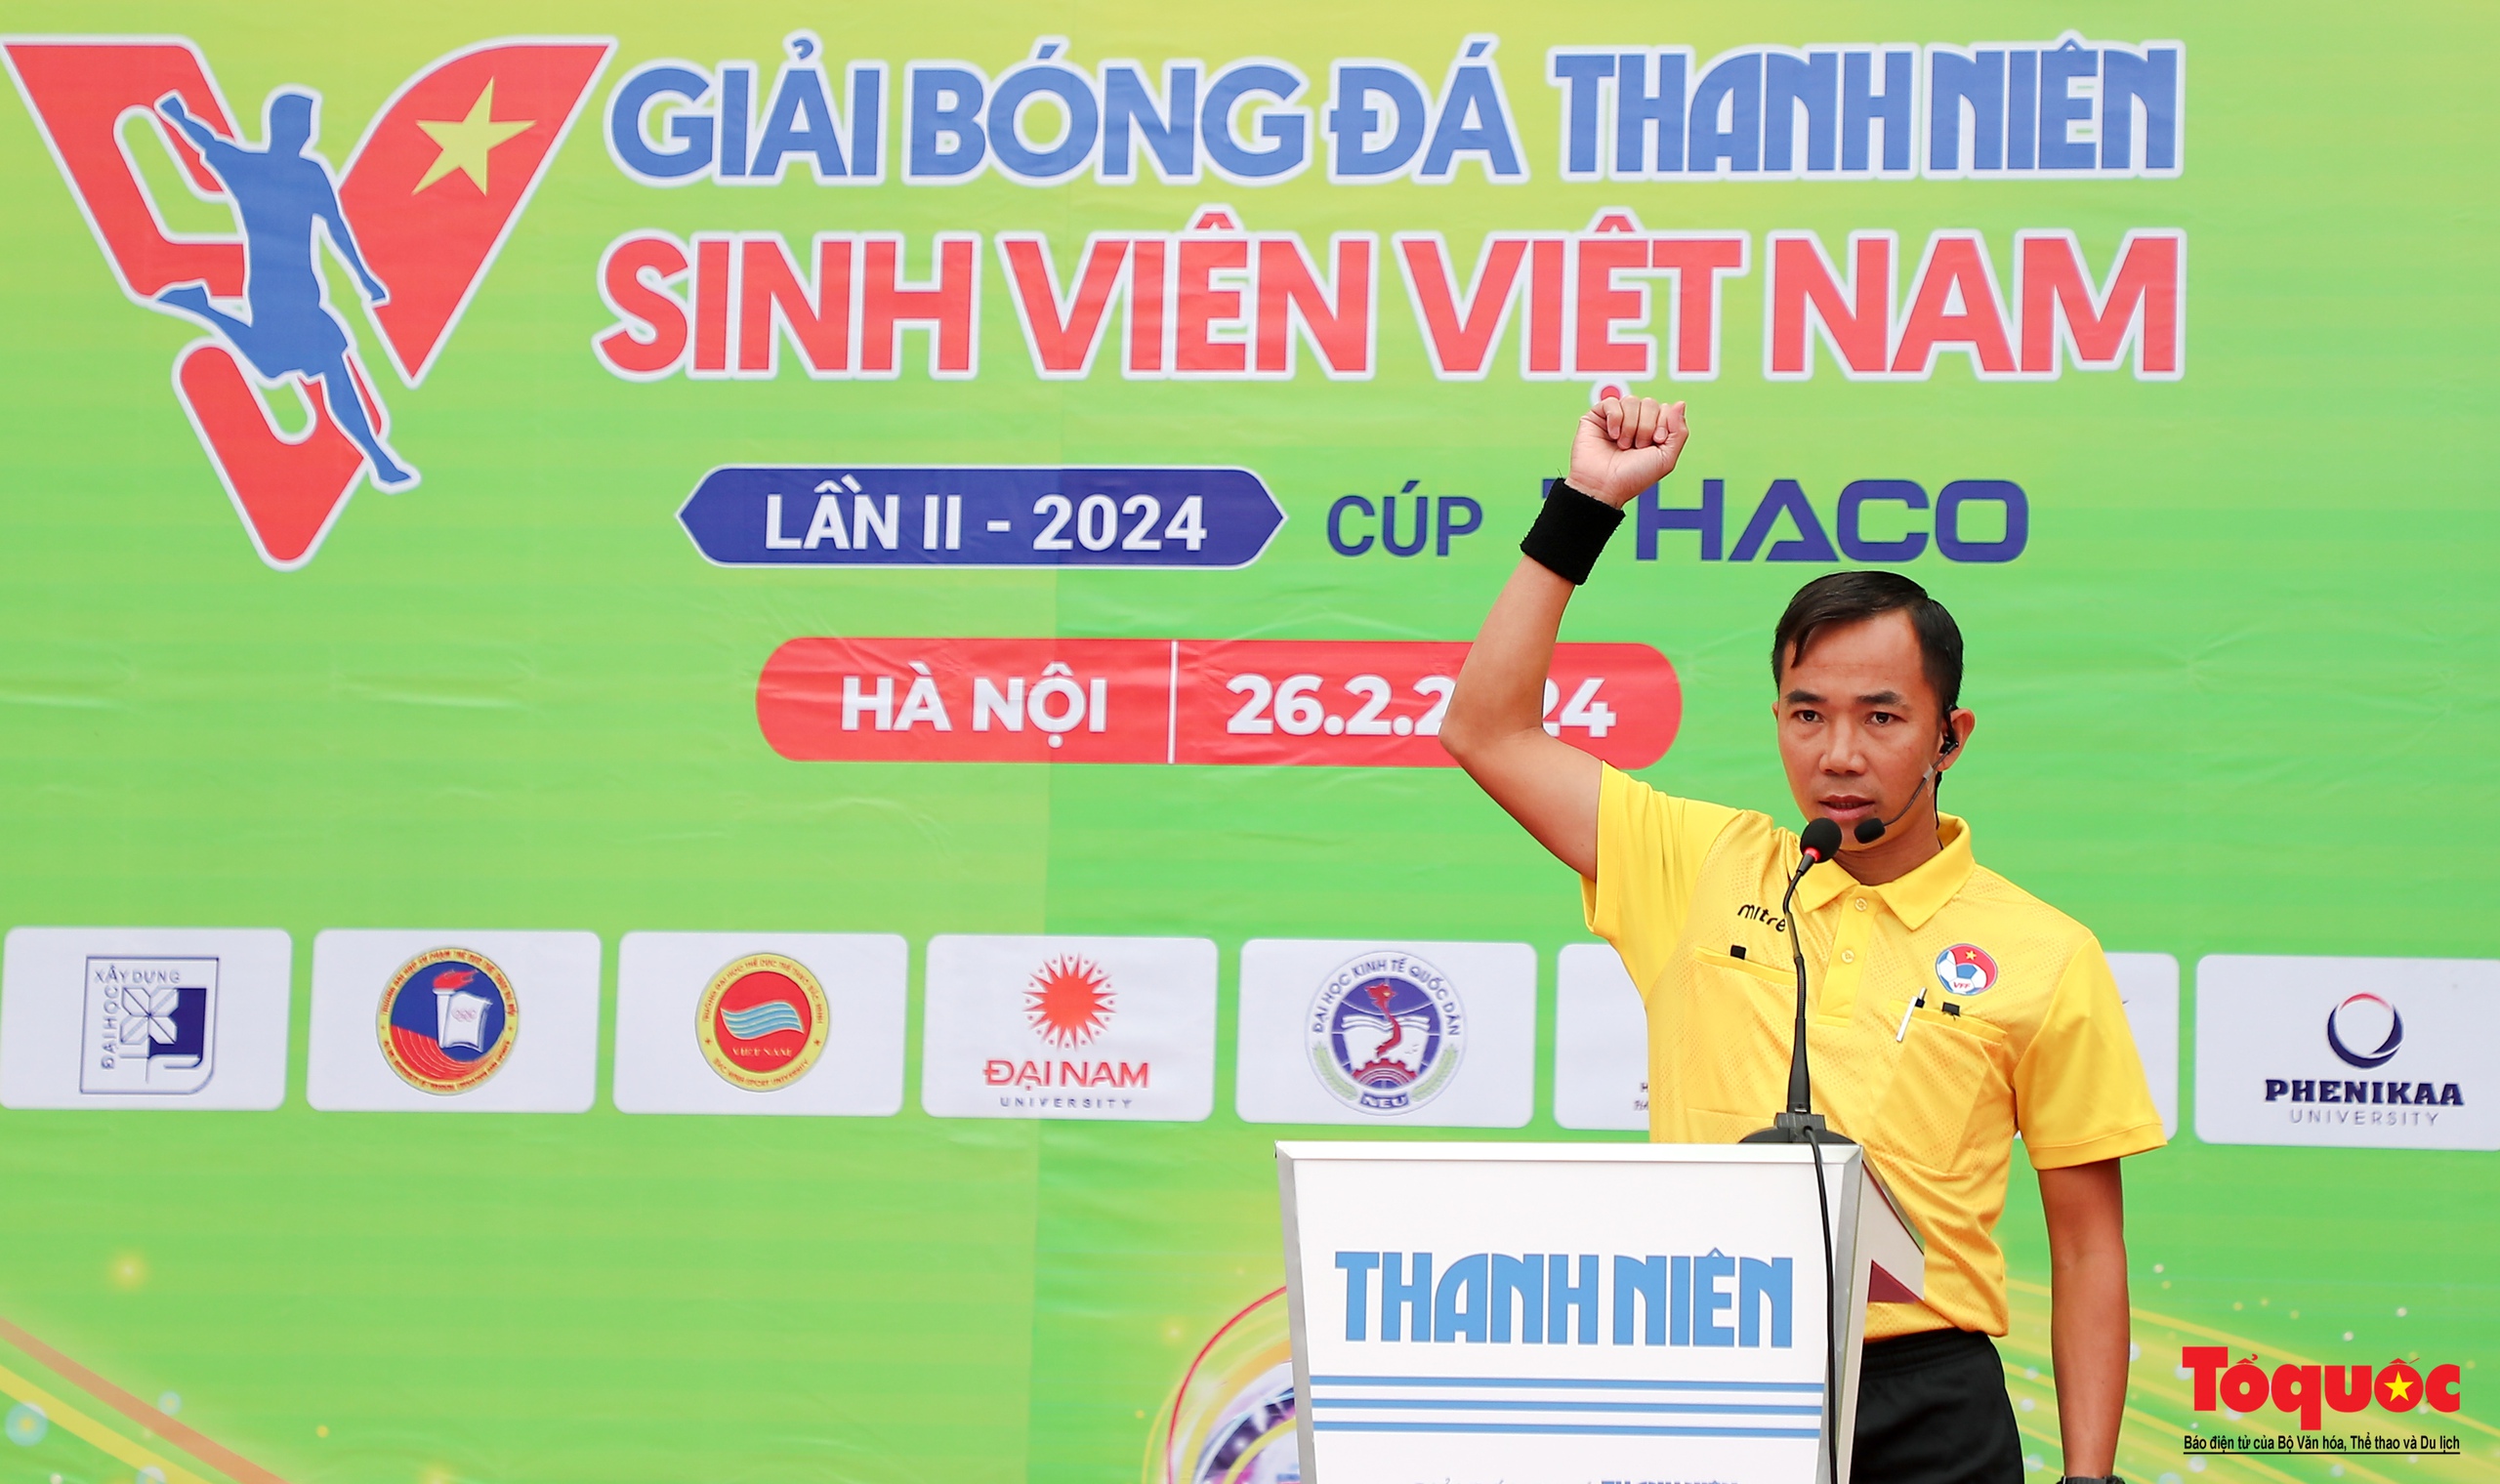 Hà Nội: Khai mạc vòng loại giải bóng đá Thanh Niên sinh viên Việt Nam lần II - 2024 - Ảnh 9.